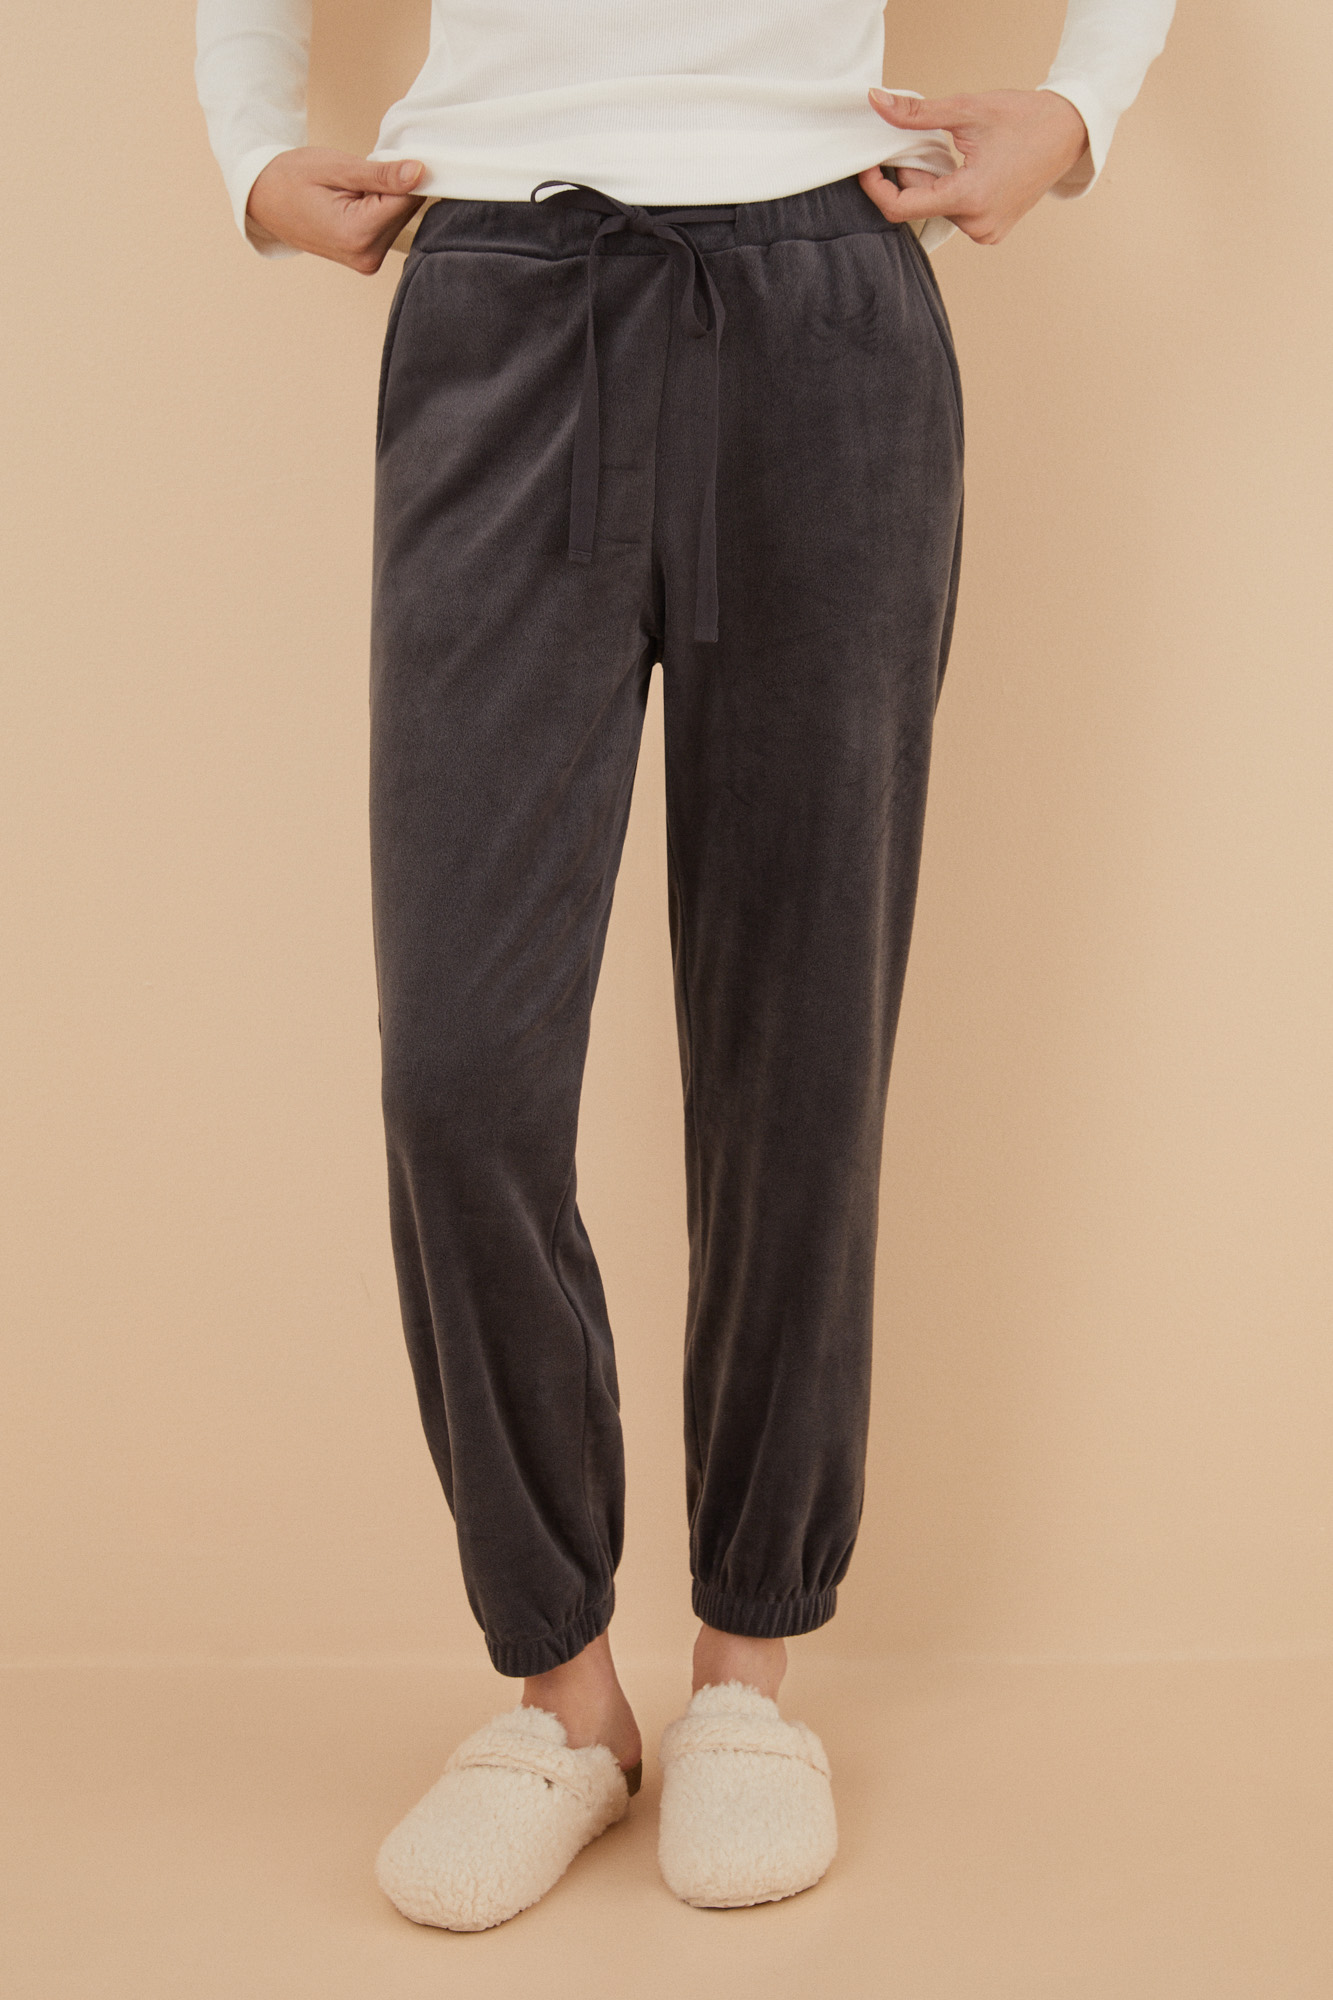 Pantalón largo terciopelo gris | Ropa de dormir de mujer y homewear | WomenSecret